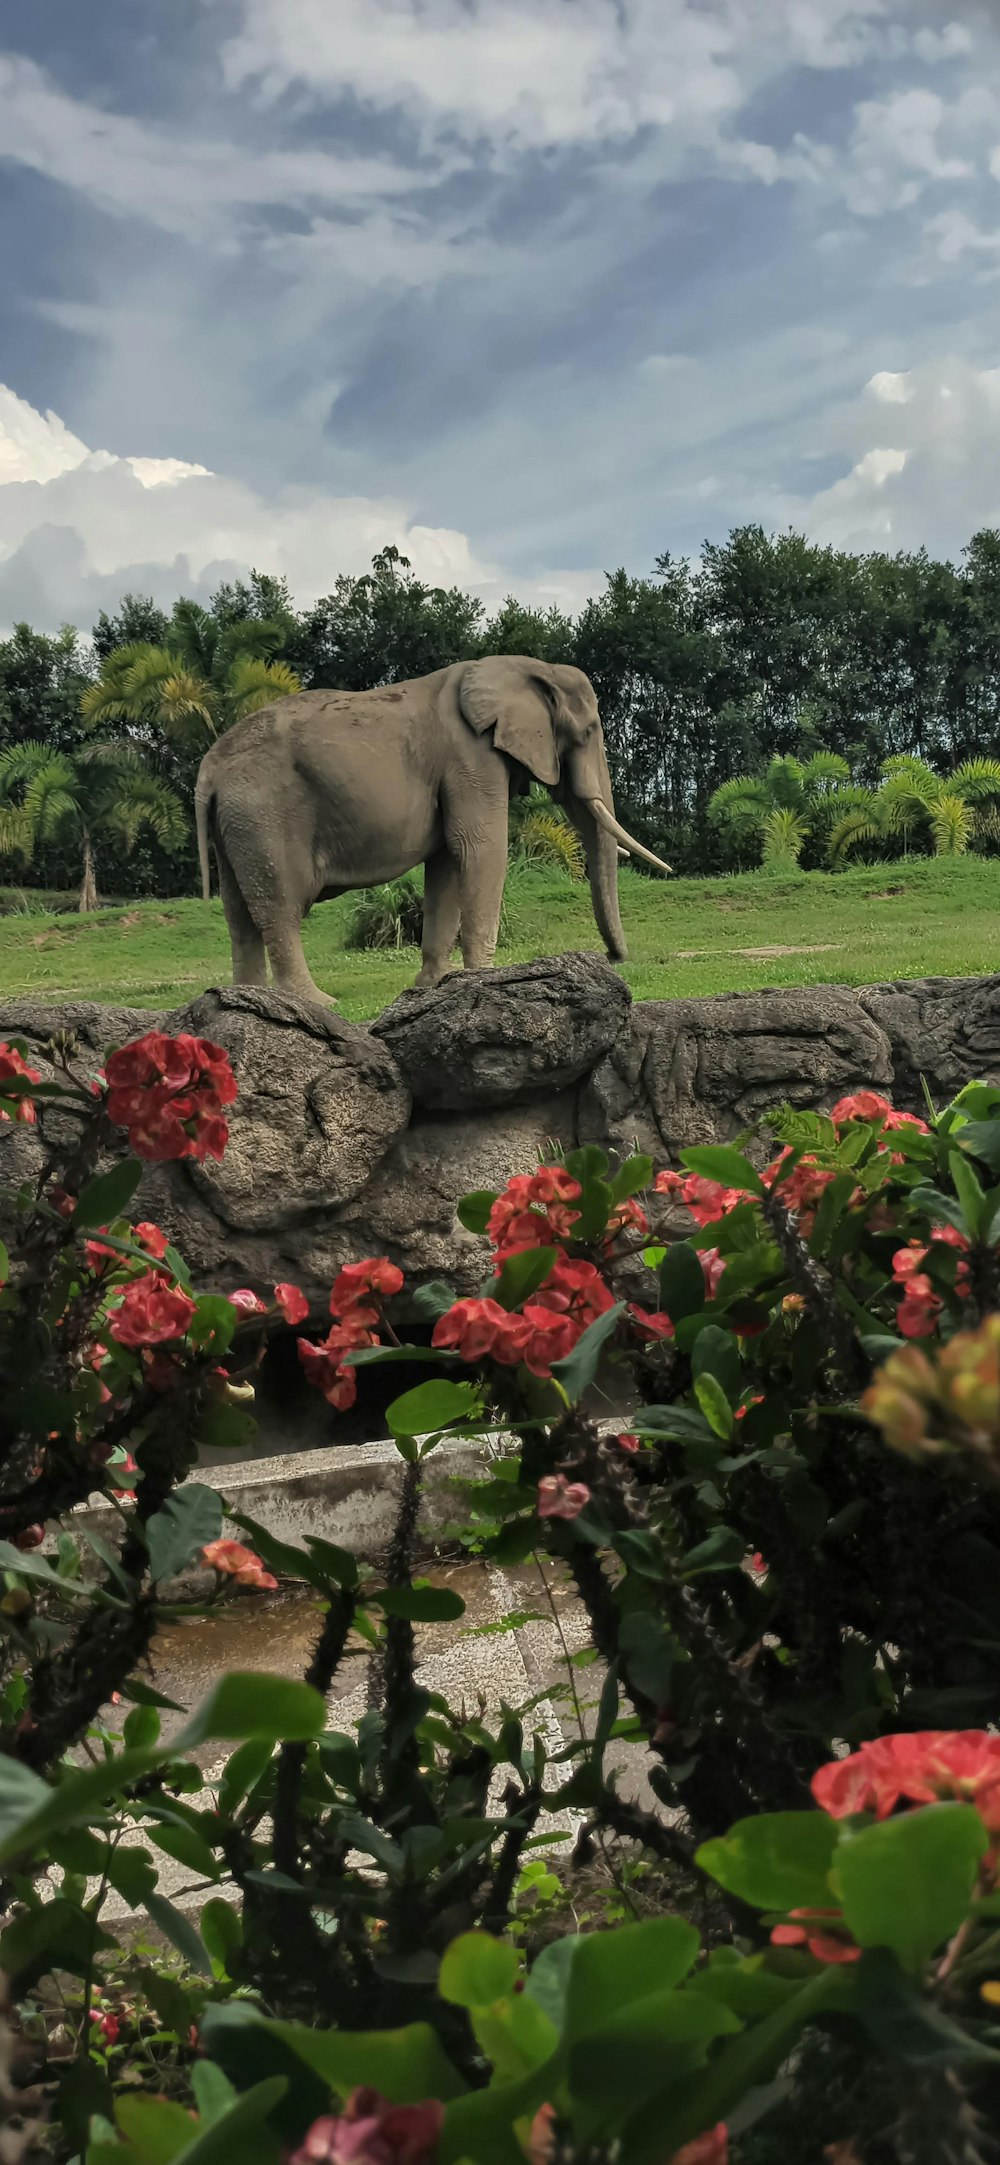 Ein großer Elefant steht auf einem üppigen grünen Feld